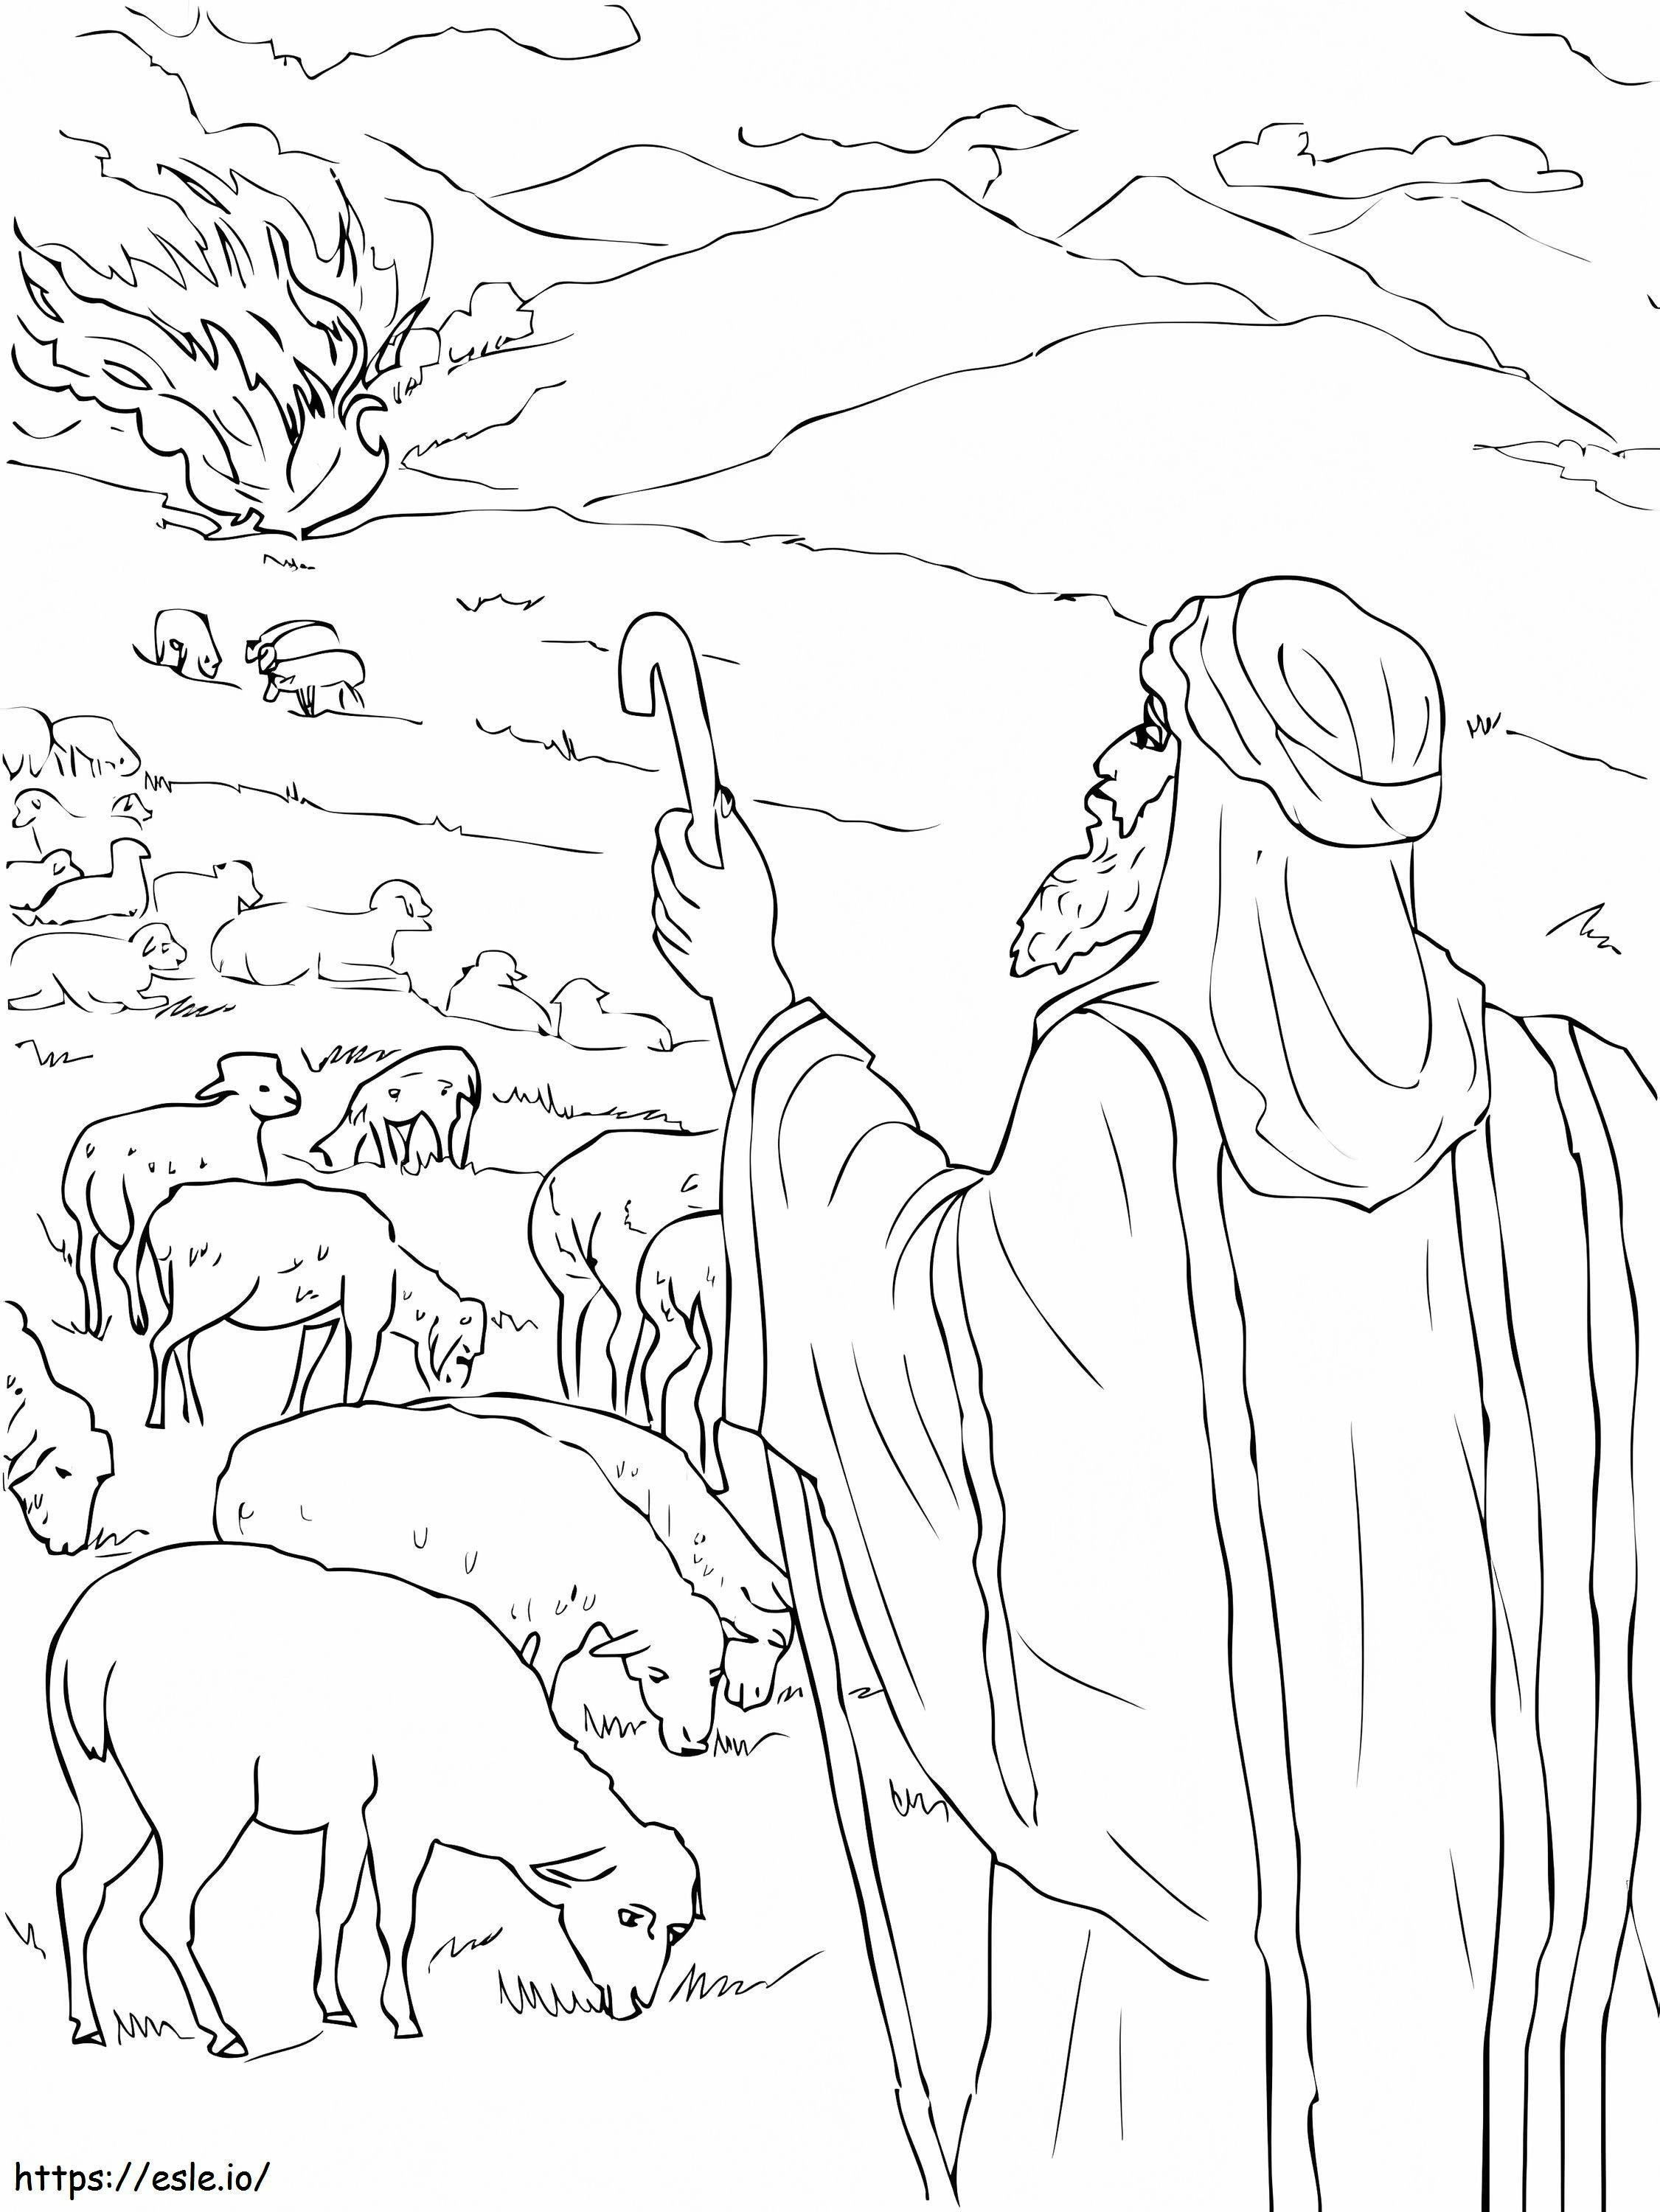 Moses sieht den brennenden Dornbusch ausmalbilder